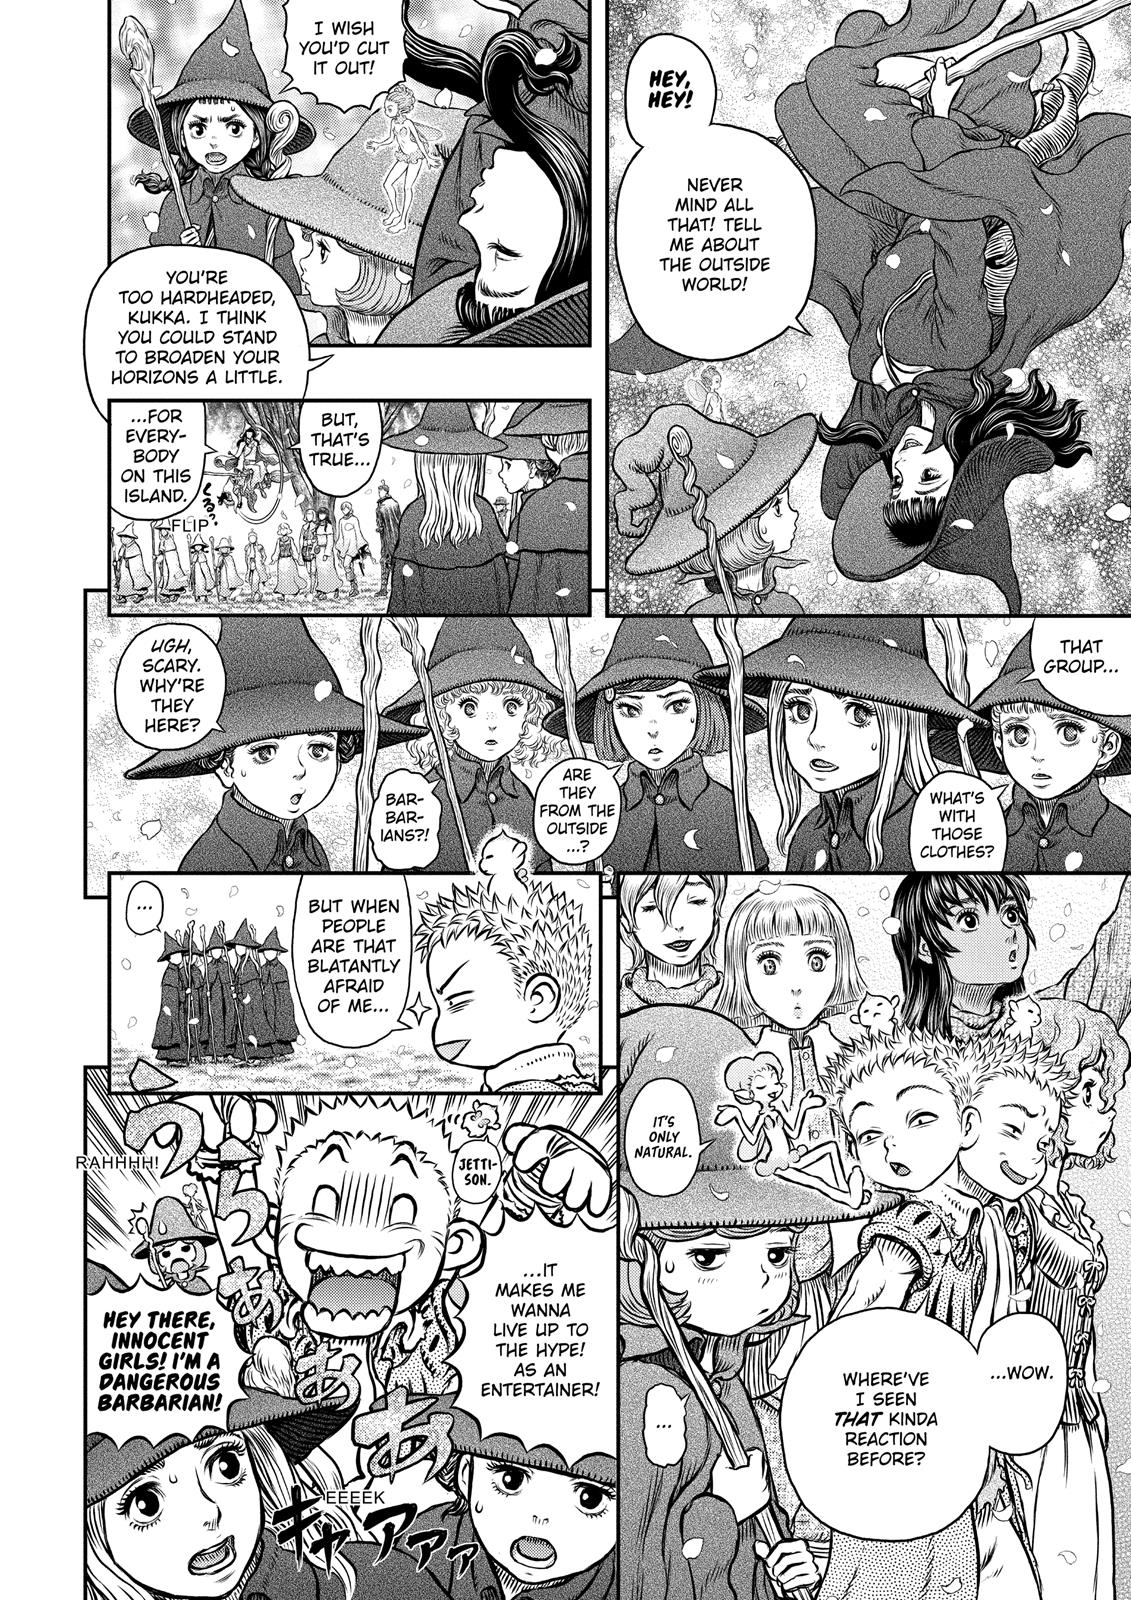 Berserk Manga Chapter 344 image 19